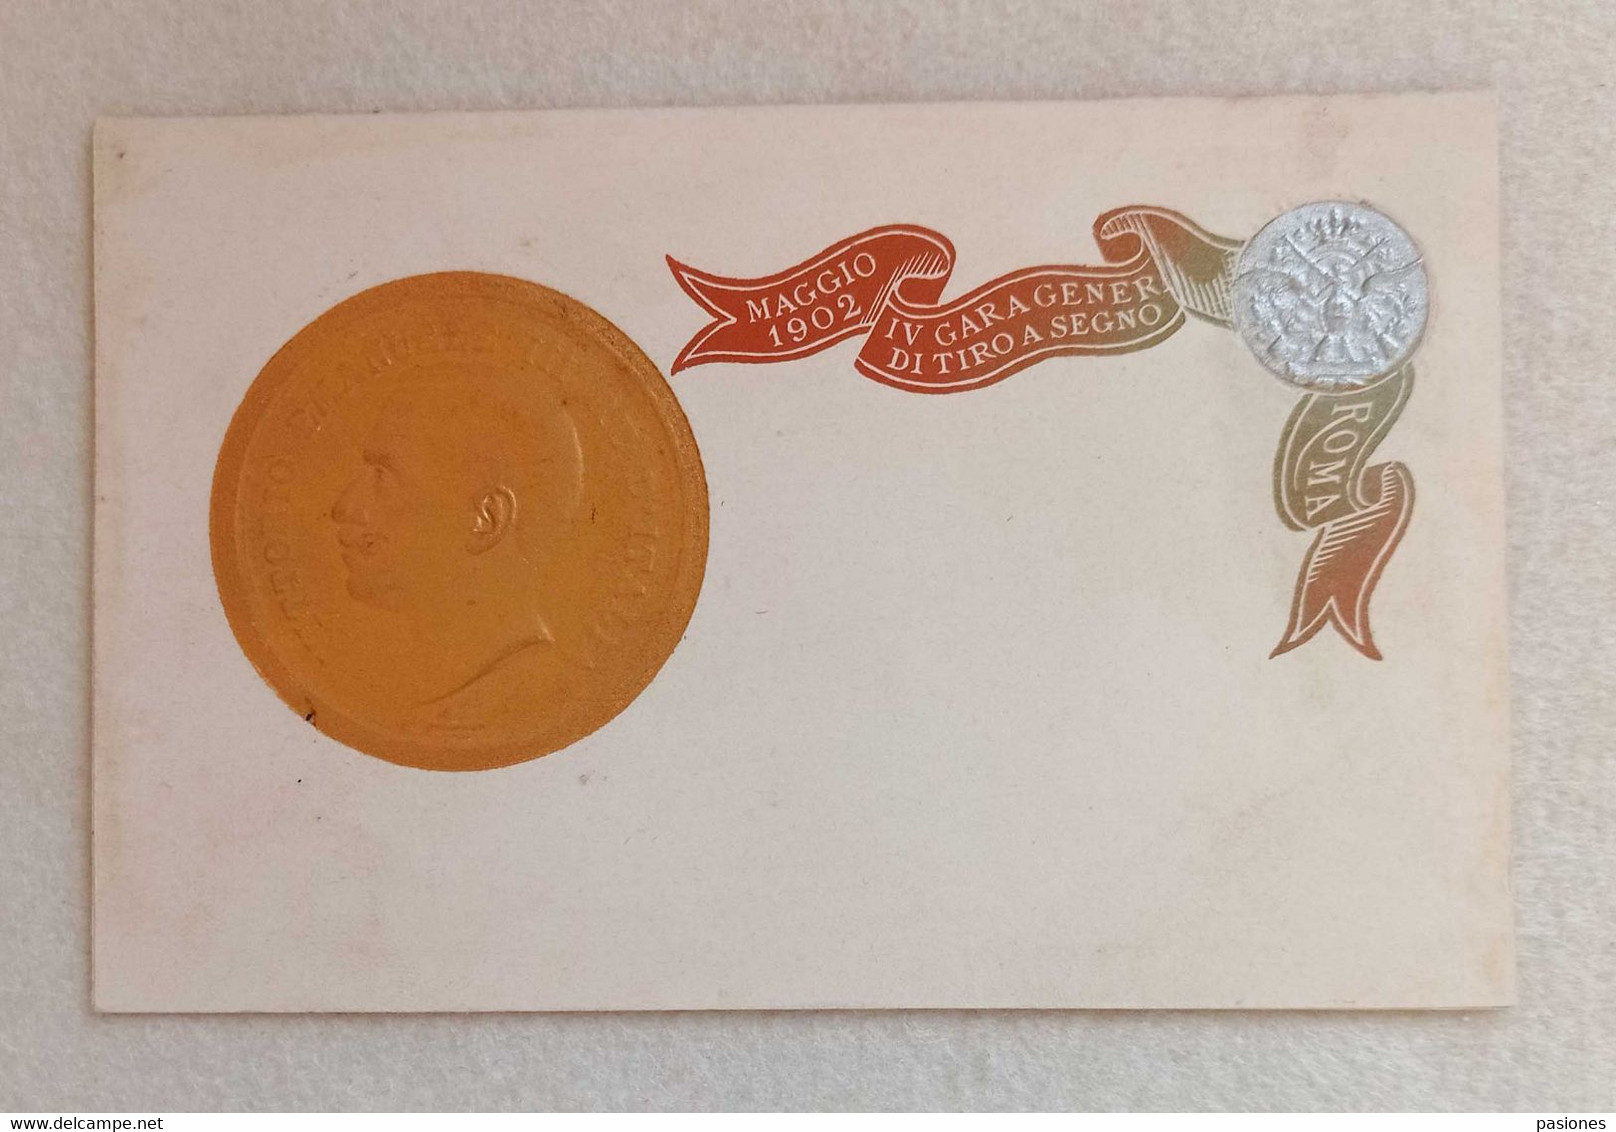 Cartolina Postale Italiana IV Gara Generale Di Tiro A Segno, Roma Maggio 1902 - Non Viaggiata (R) - Schieten (Wapens)